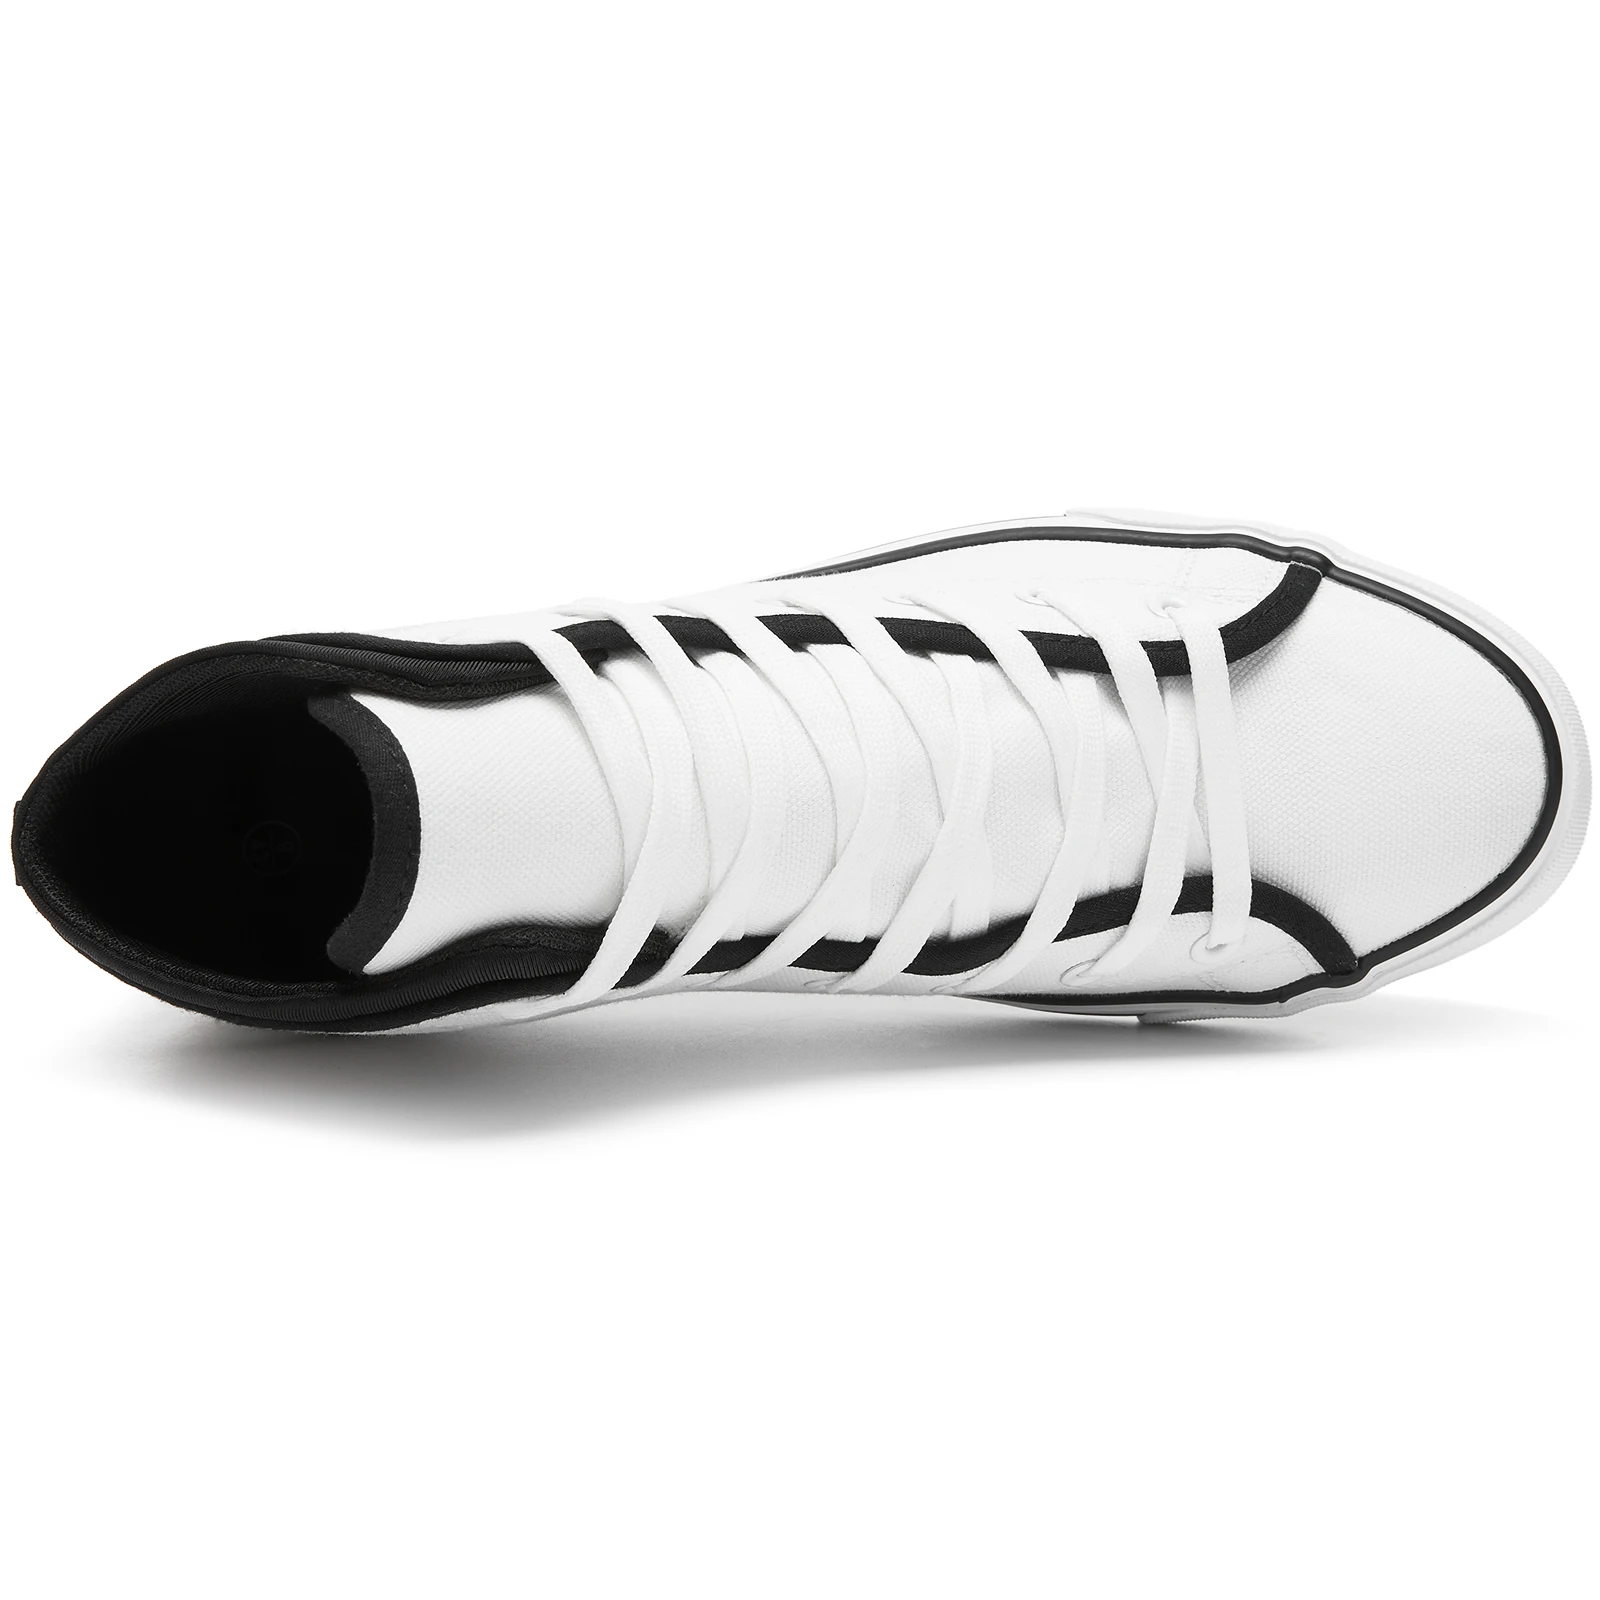 NR High top canvas shoes custom breathable men's shoes wholesale women's shoes professional manufacturer